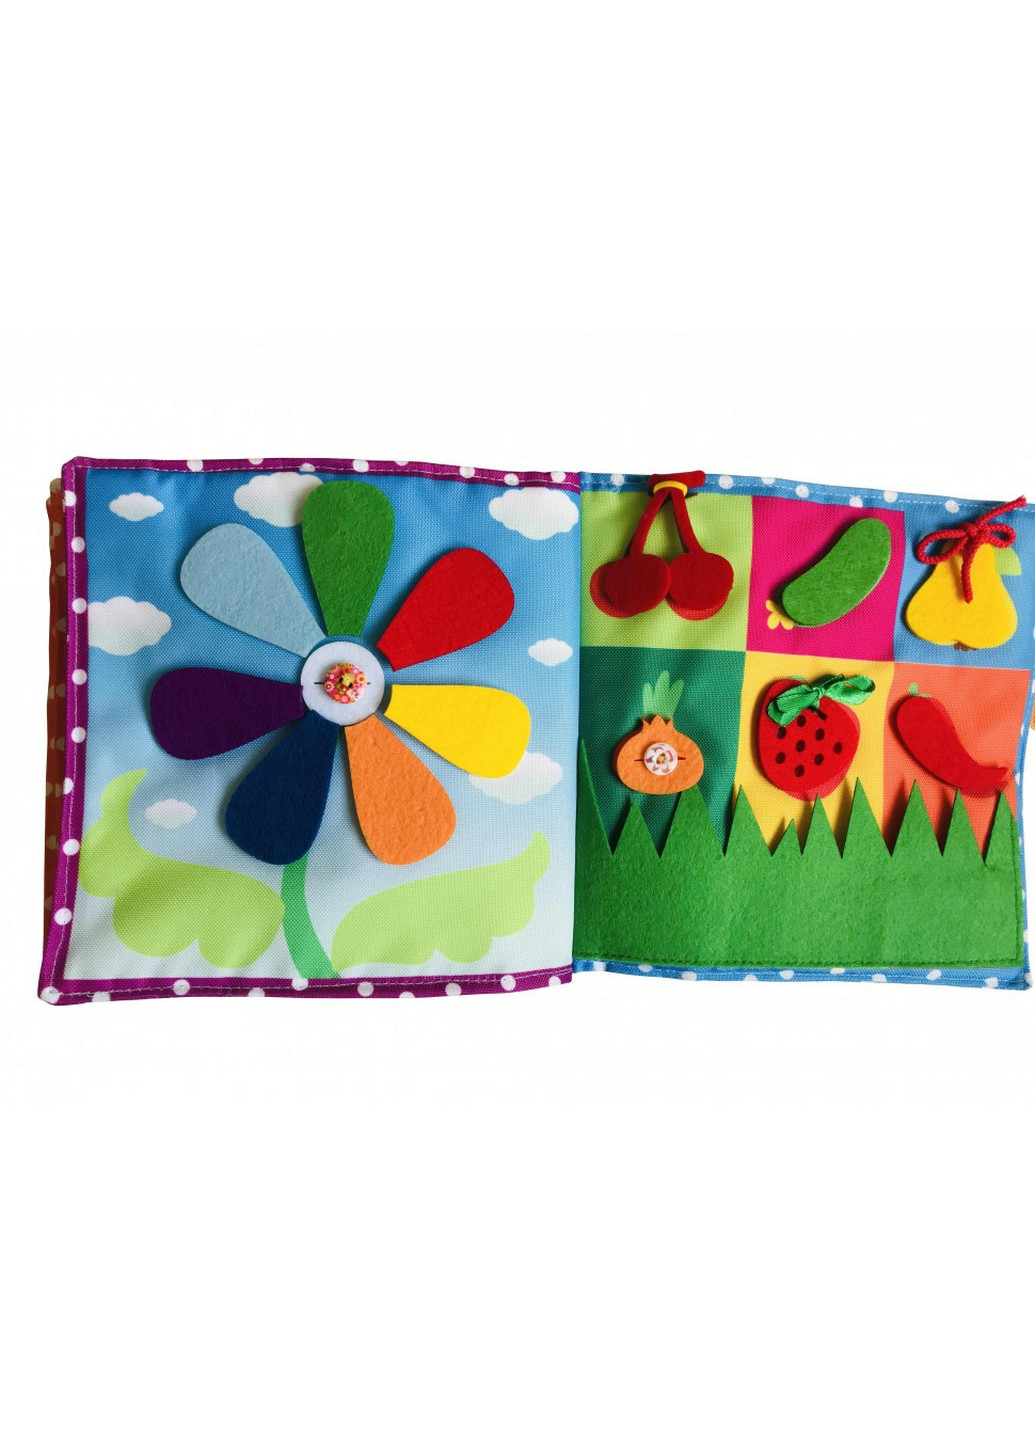 Текстильна розвиваюча книга для малюків "Сонечко" 22х22х6 см Bambini (259265133)